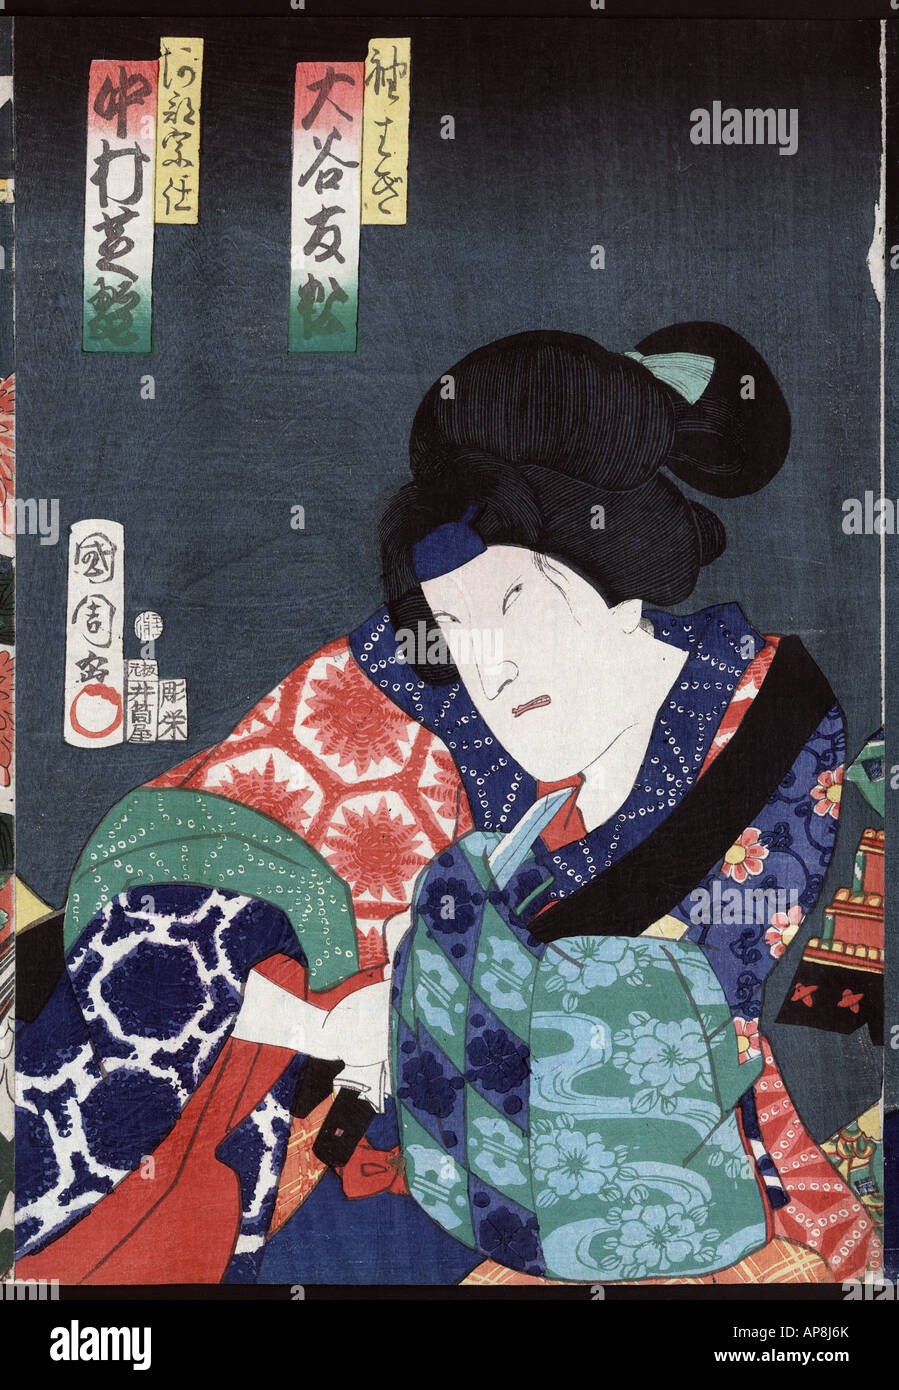 Portraits d'acteurs, souvent jouant des rôles, le Japon entre 1860 et 1866 (sceau date : 1860.7) Banque D'Images